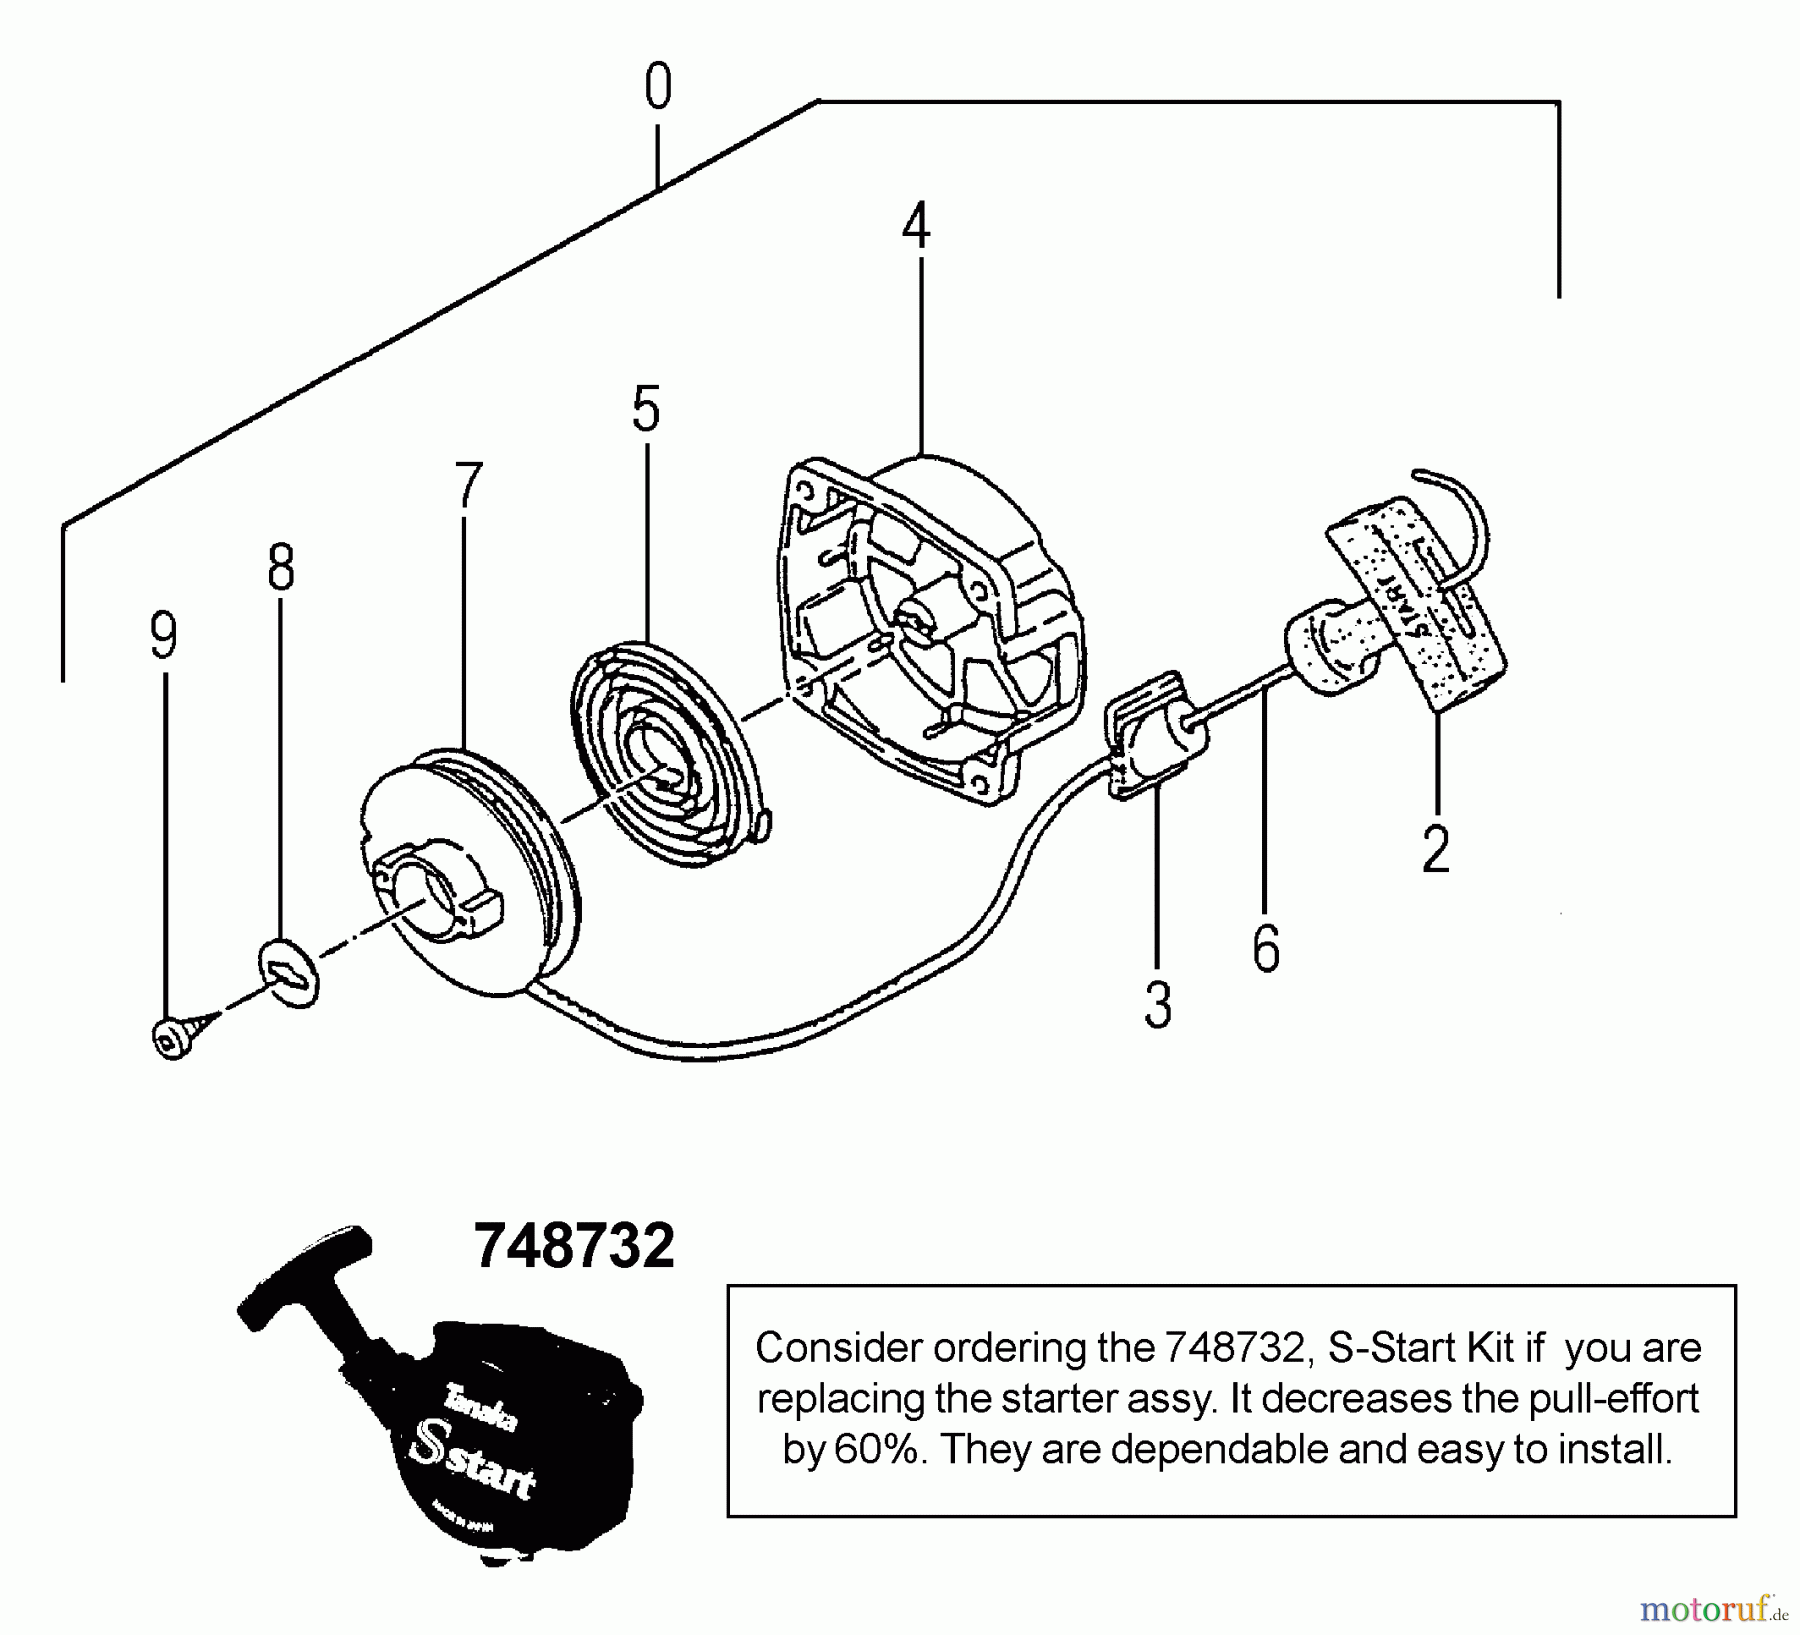  Tanaka Trimmer, Motorsensen TBC-340D - Tanaka Grass Trimmer / Brush Cutter Recoil Starter